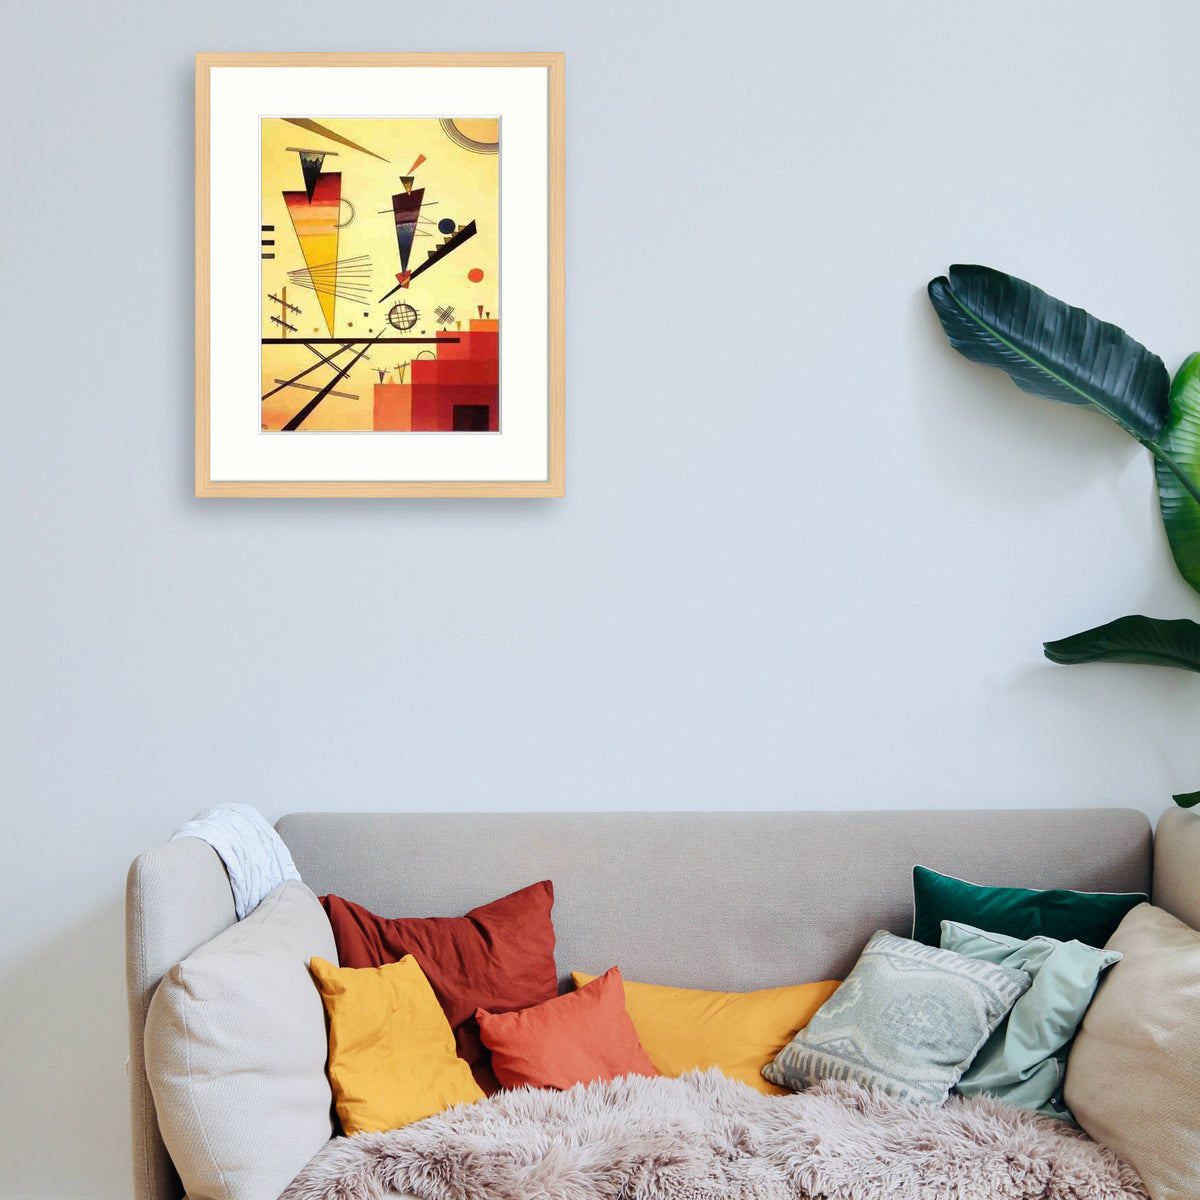 Kandinsky - Structure joyeuse Le Cadre Décoration intérieure Tableaux cadre bois affiche poster oeuvre d'art rapport qualité prix pas cher peintre célèbre